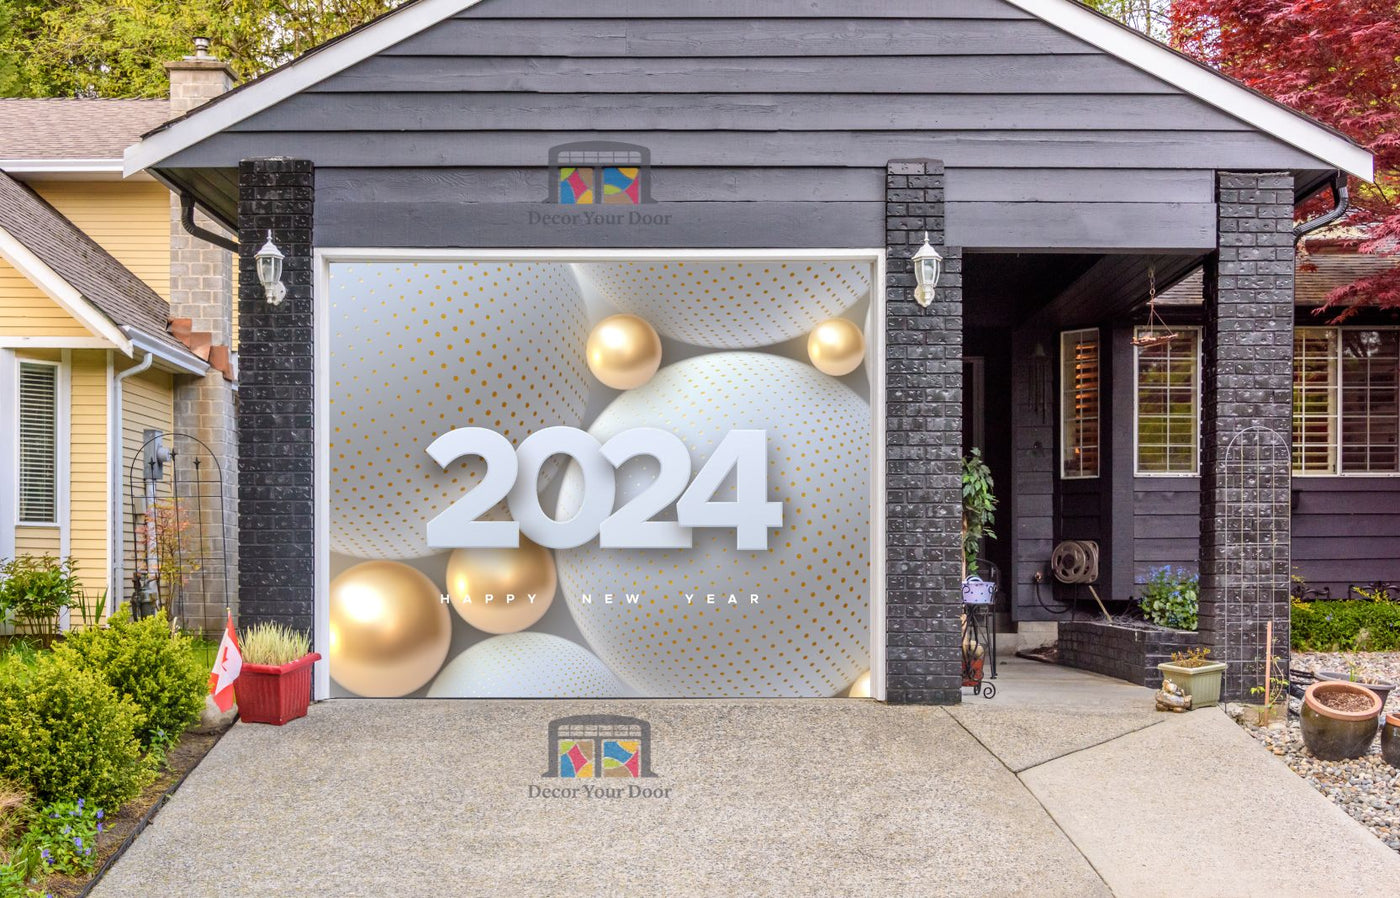 Happy New Year 2024 Golden Balls Garage Door Wrap Cover Mural Decoration